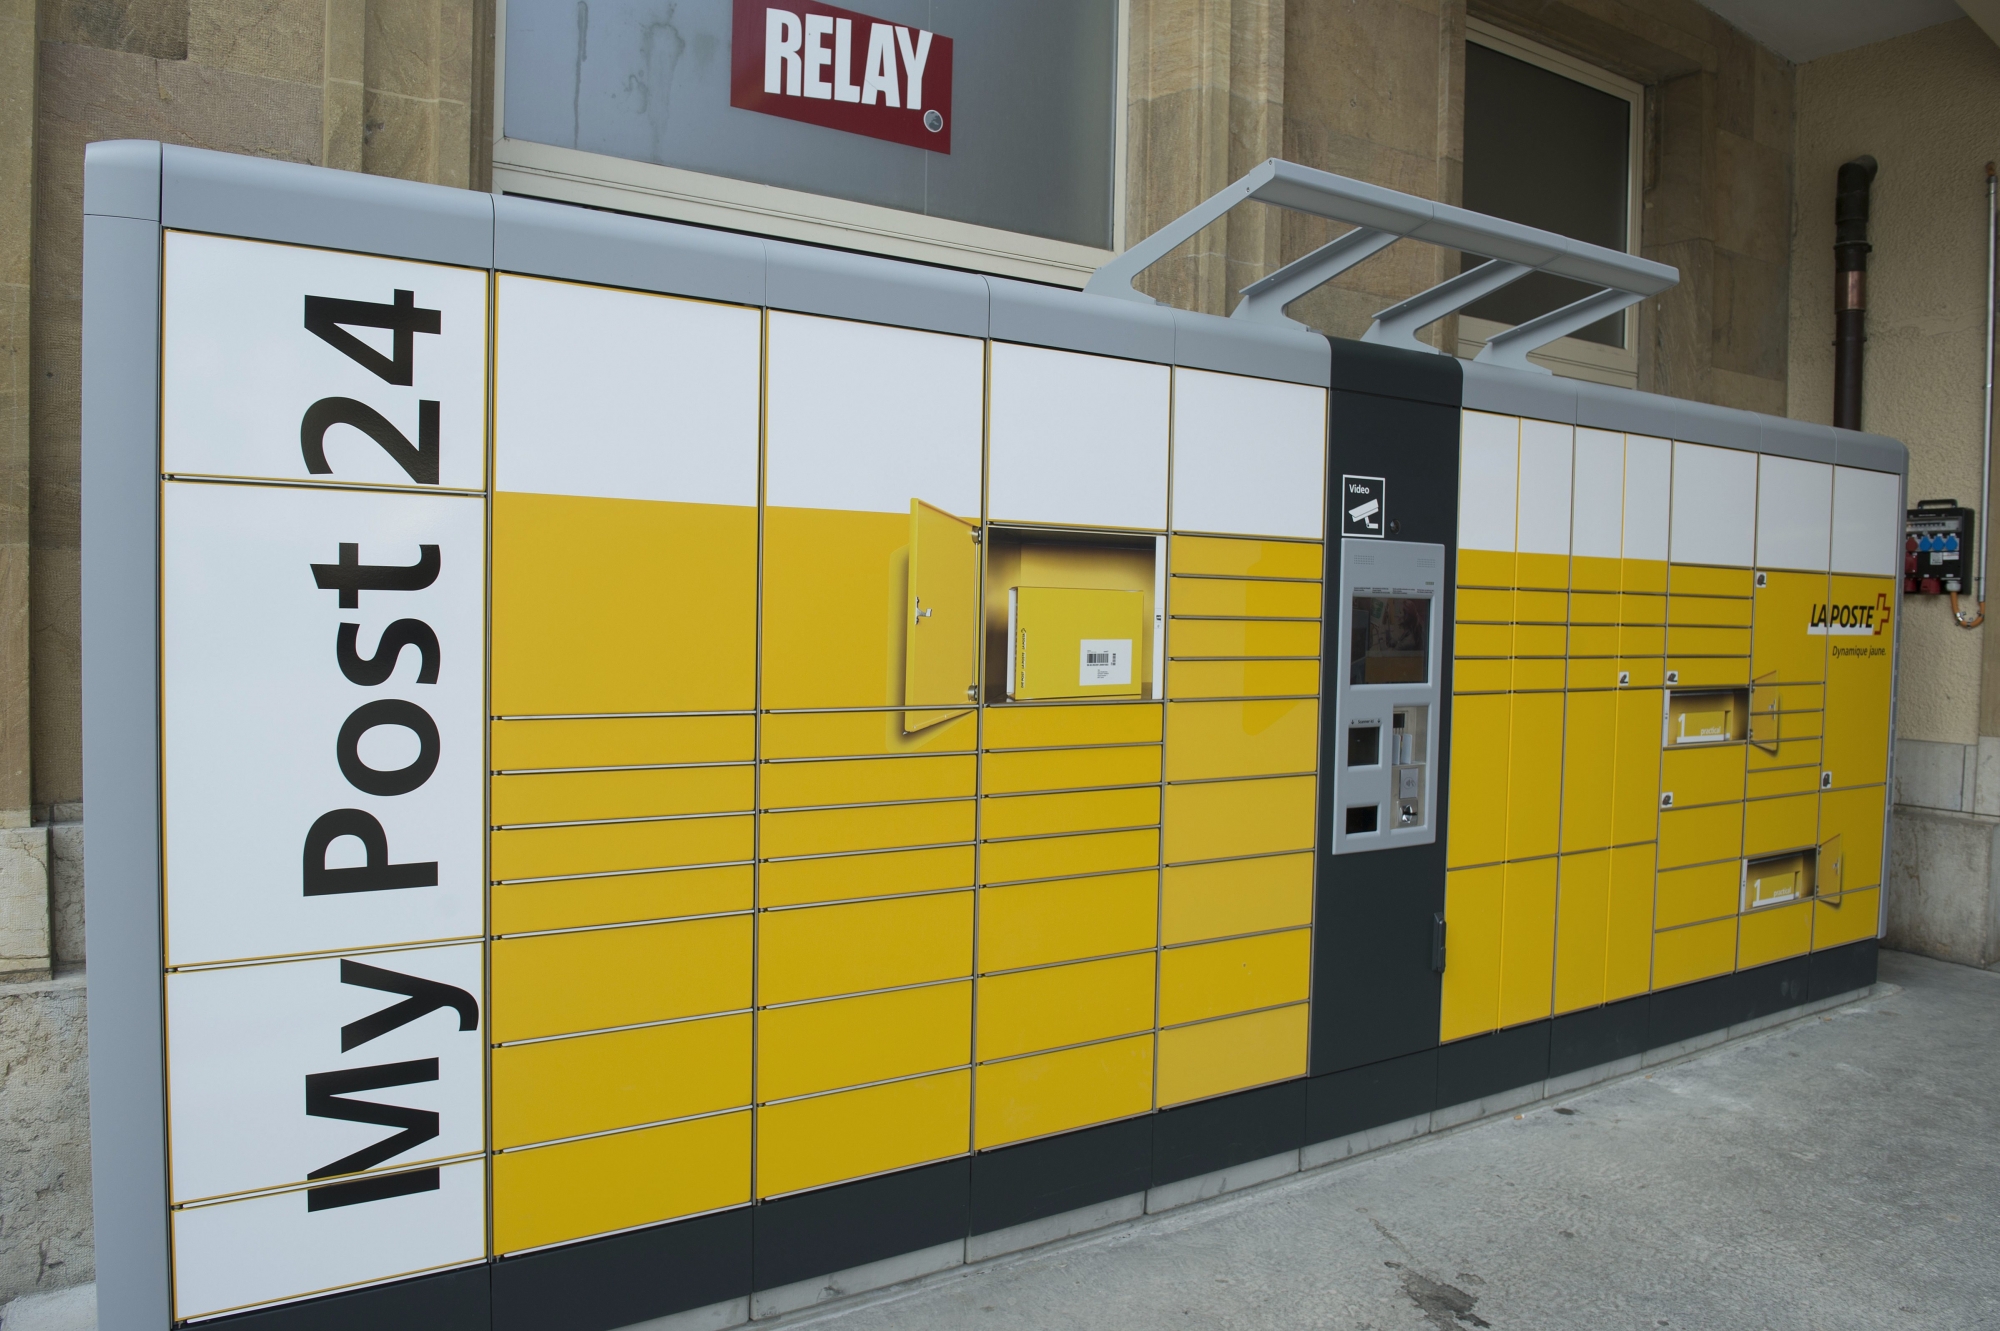 Le "My Post 24" de la gare de Neuchâtel. Photo: David Marchon